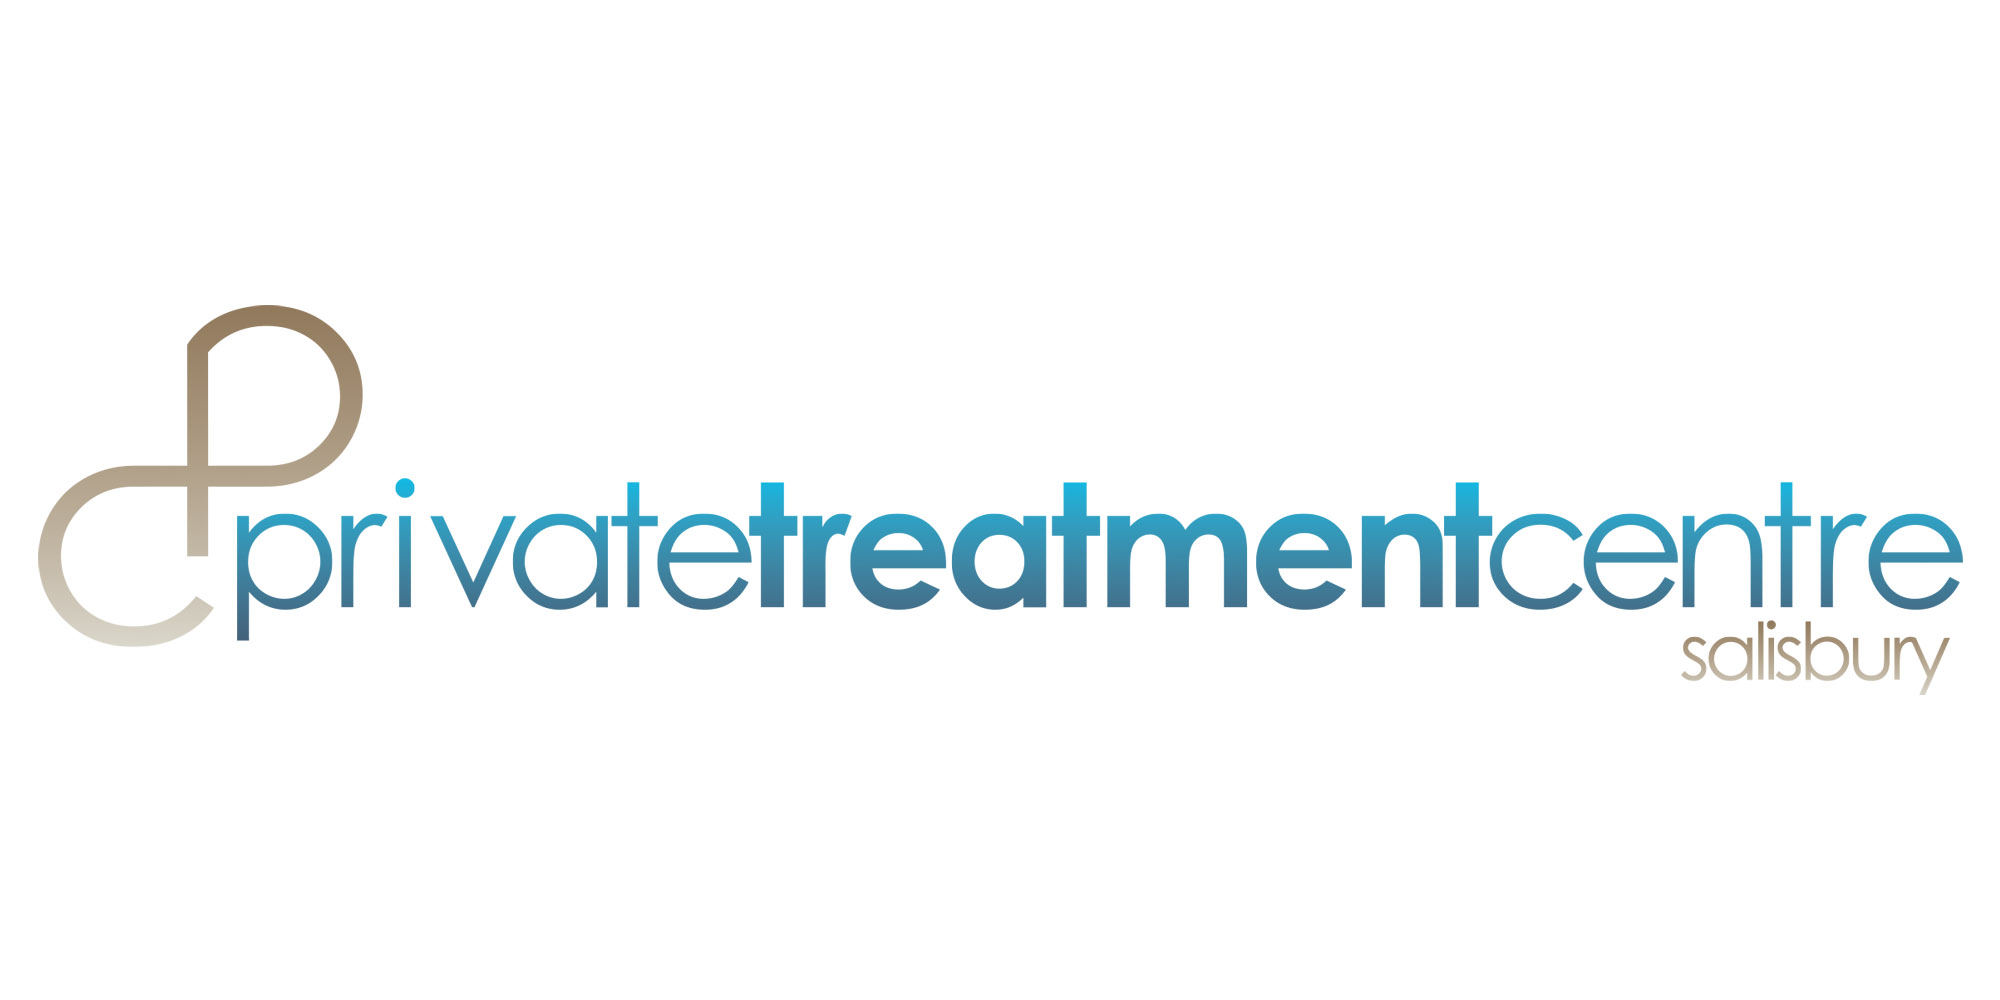 Private Treatment Centre Logo Design